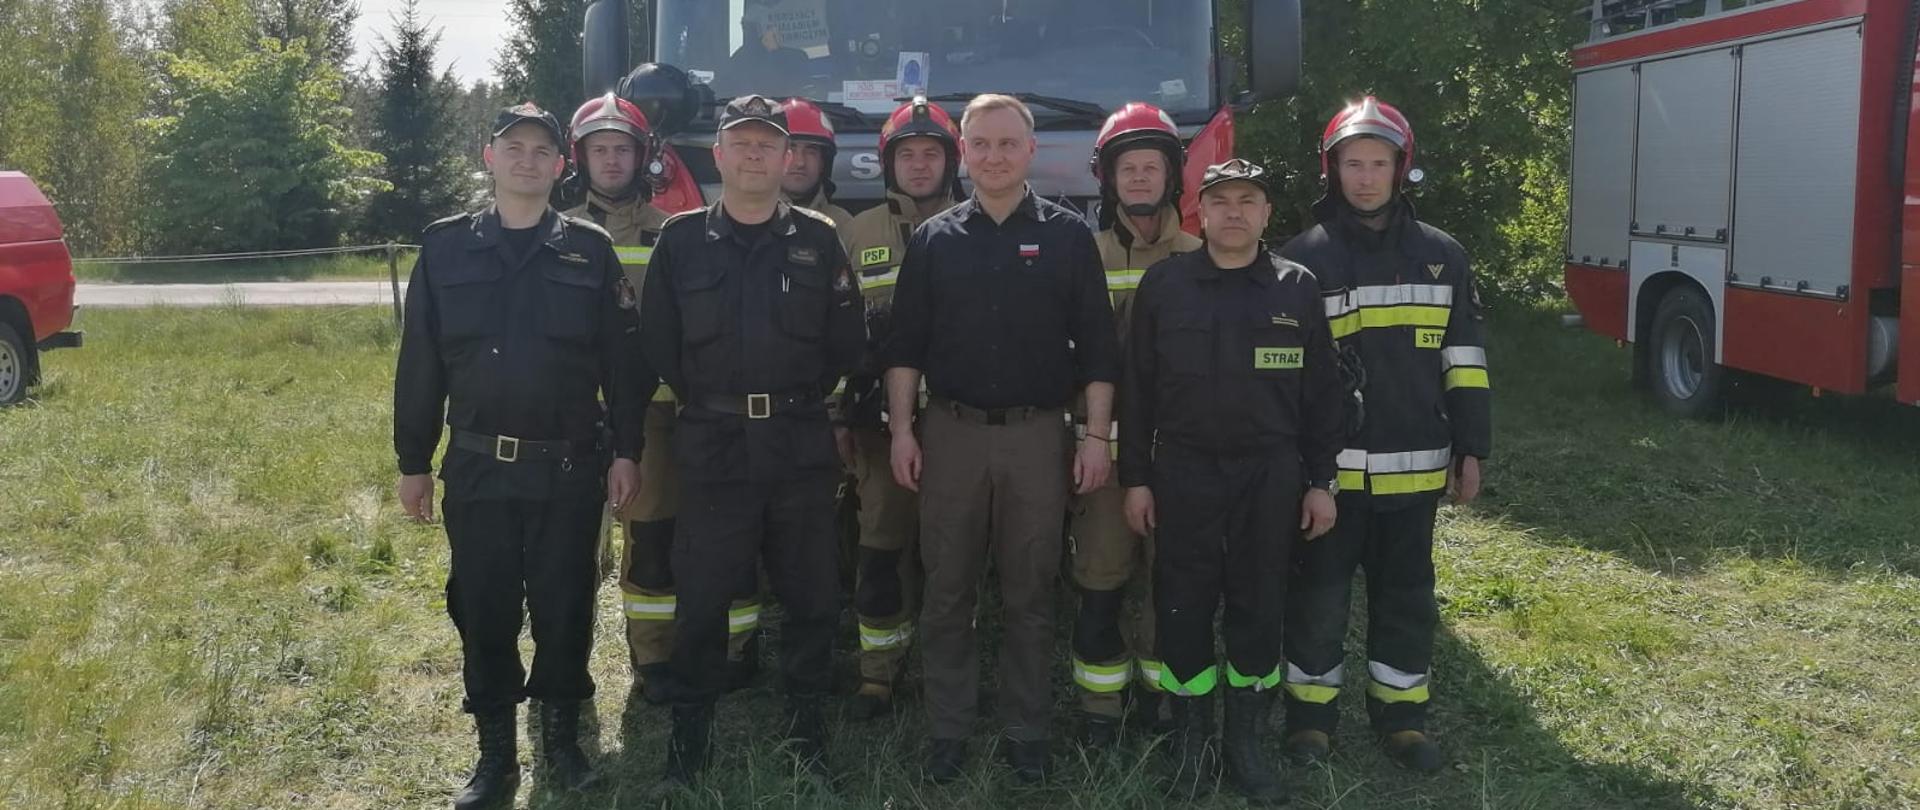 Strażacy zabezpieczający lądowisko rządowego śmigłowca stoją wraz z prezydentem Andrzejem Dudą przed wozem strażackim.